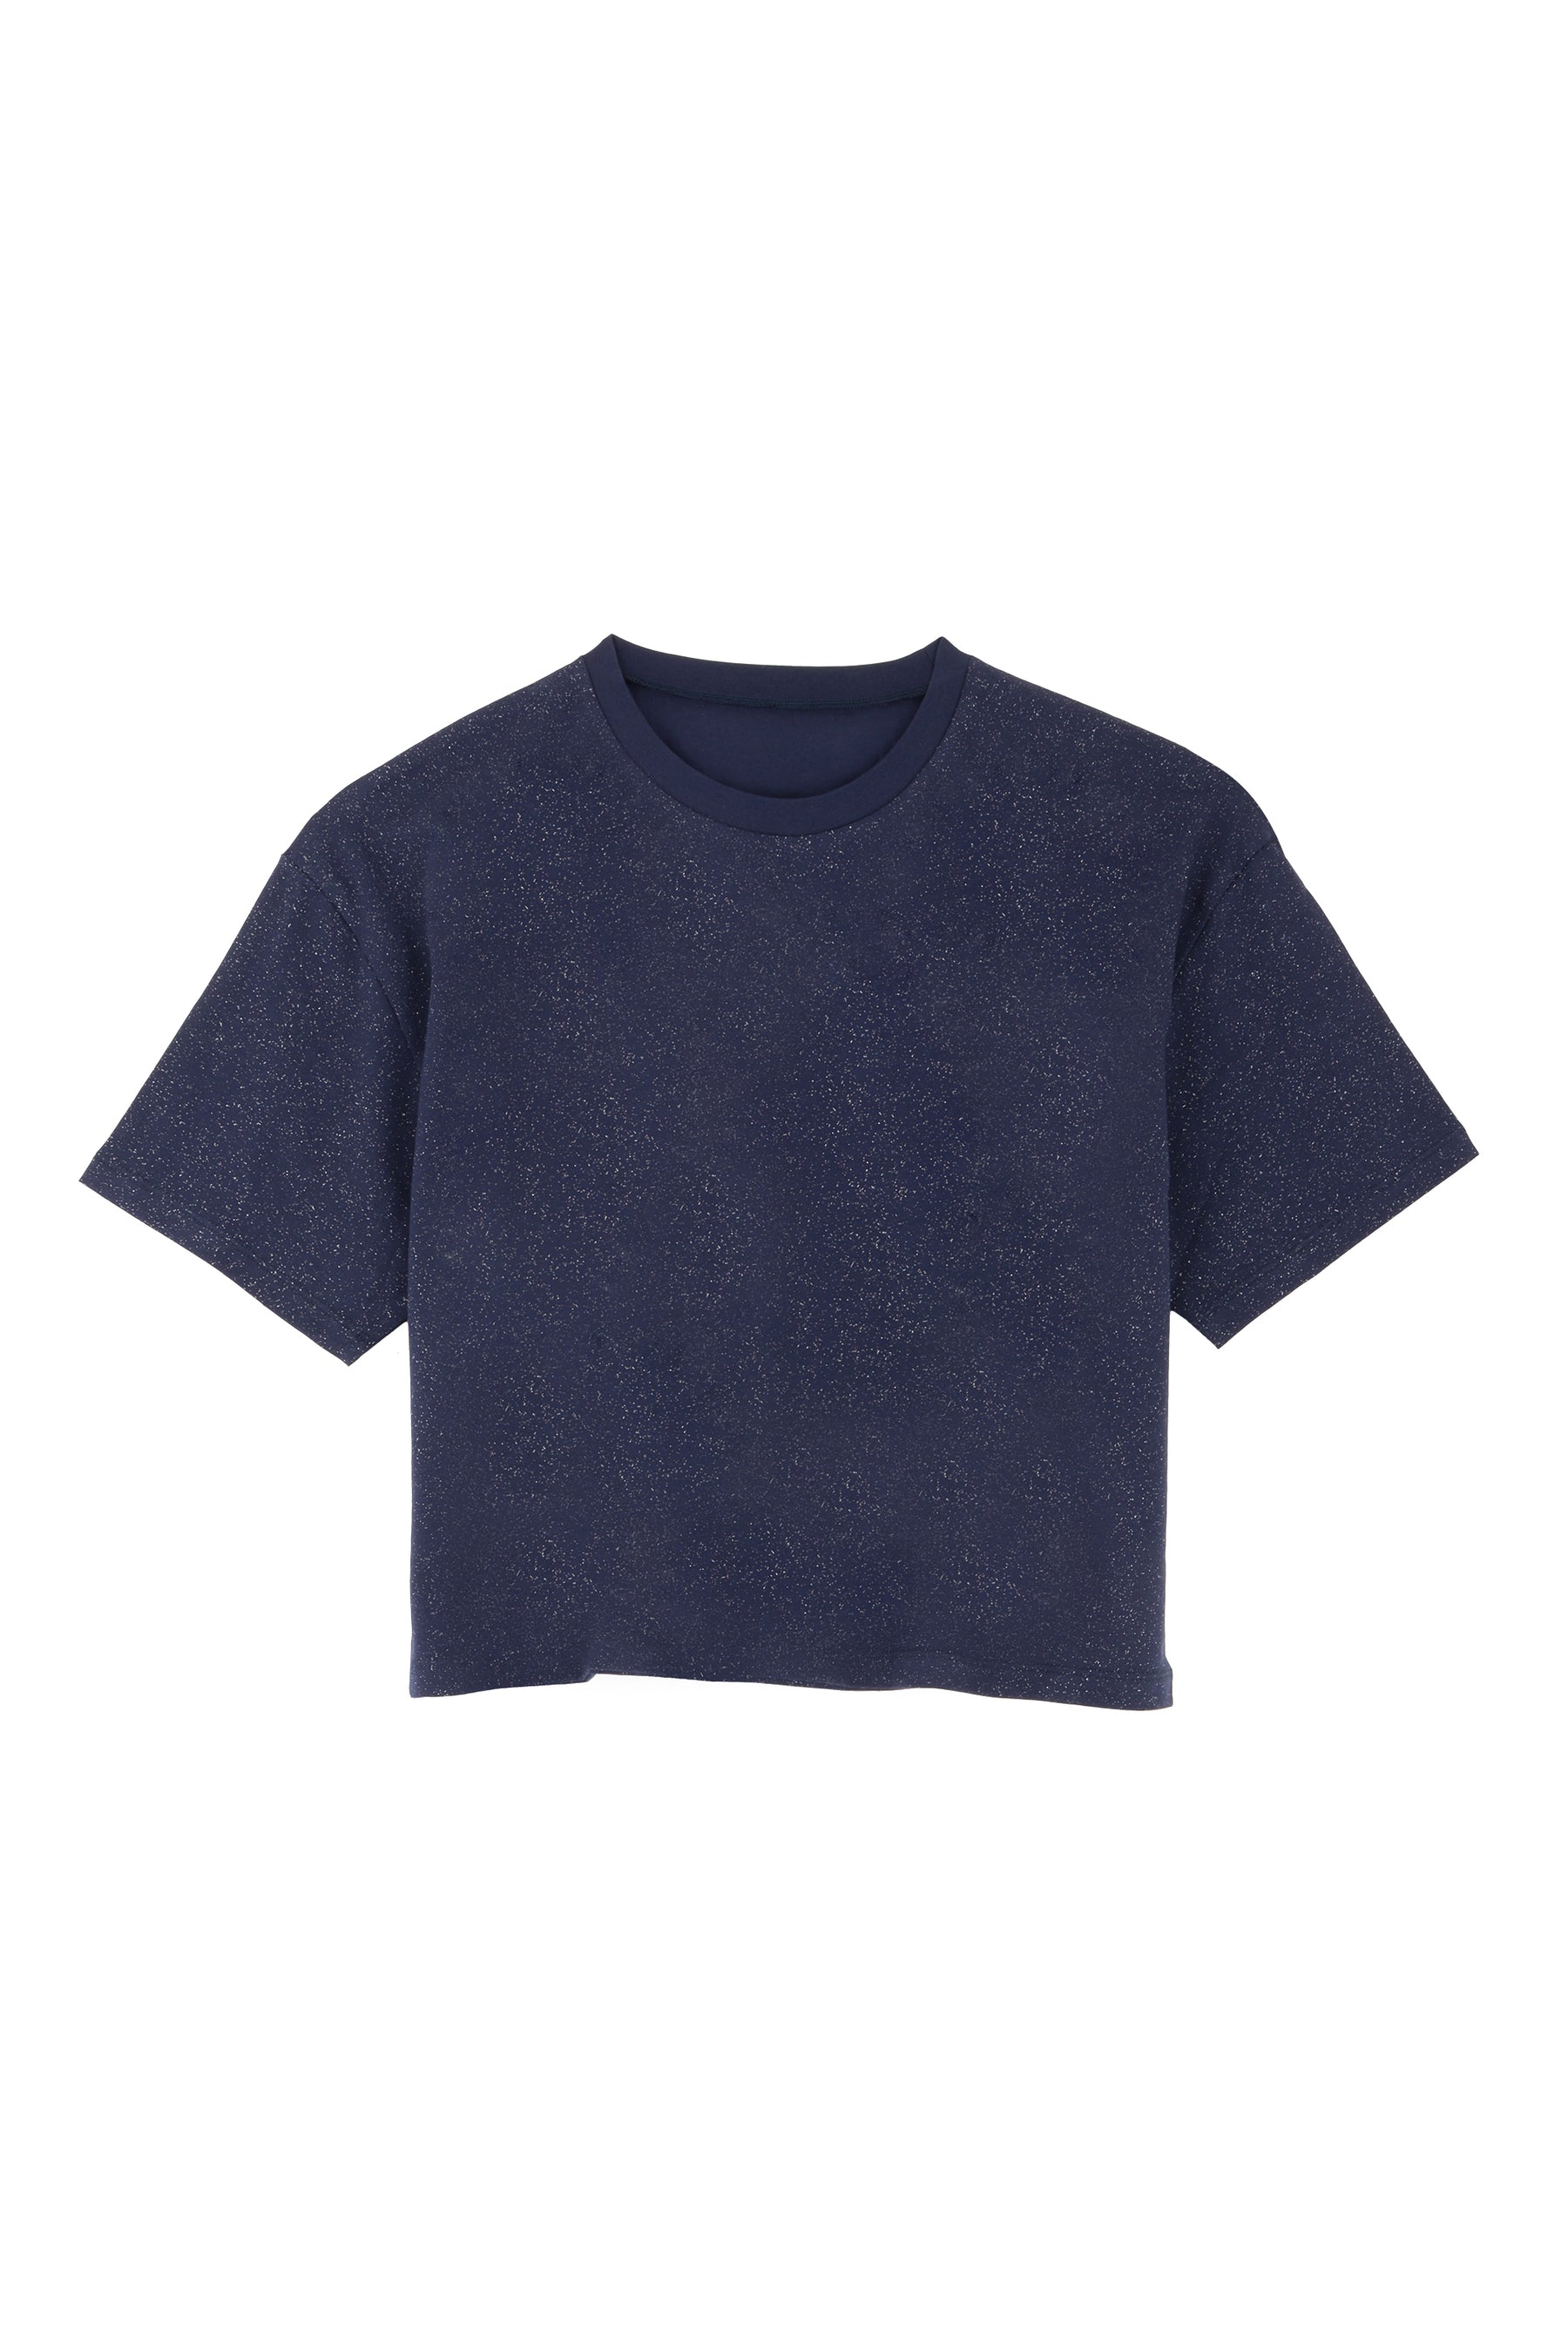 T-shirt coton BIO - Paillettes Marine